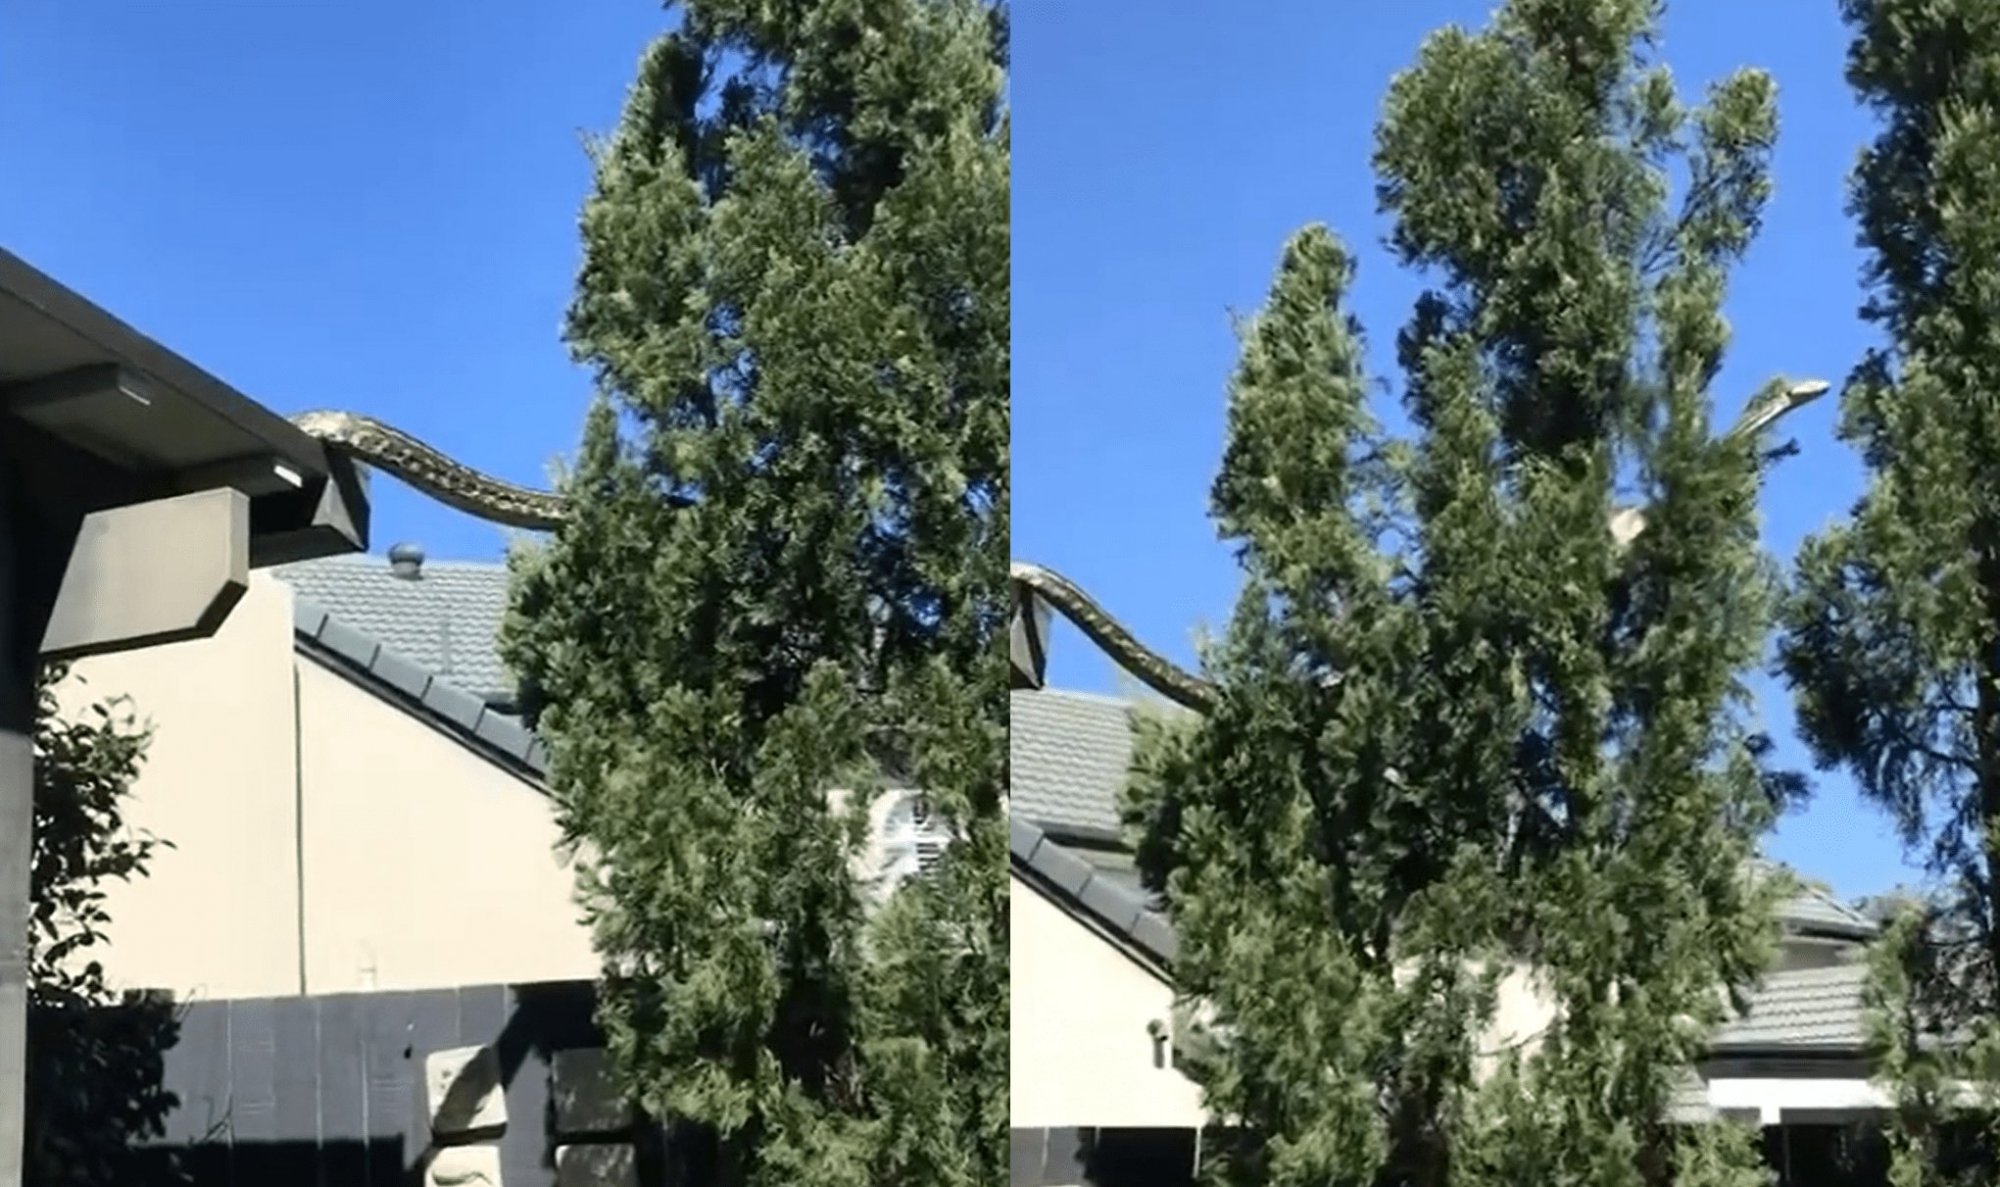 Αυστραλία: Τρομακτικό βίντεο - Πύθωνας 5 μέτρων να κάνει... βόλτα στη στέγη σπιτιού